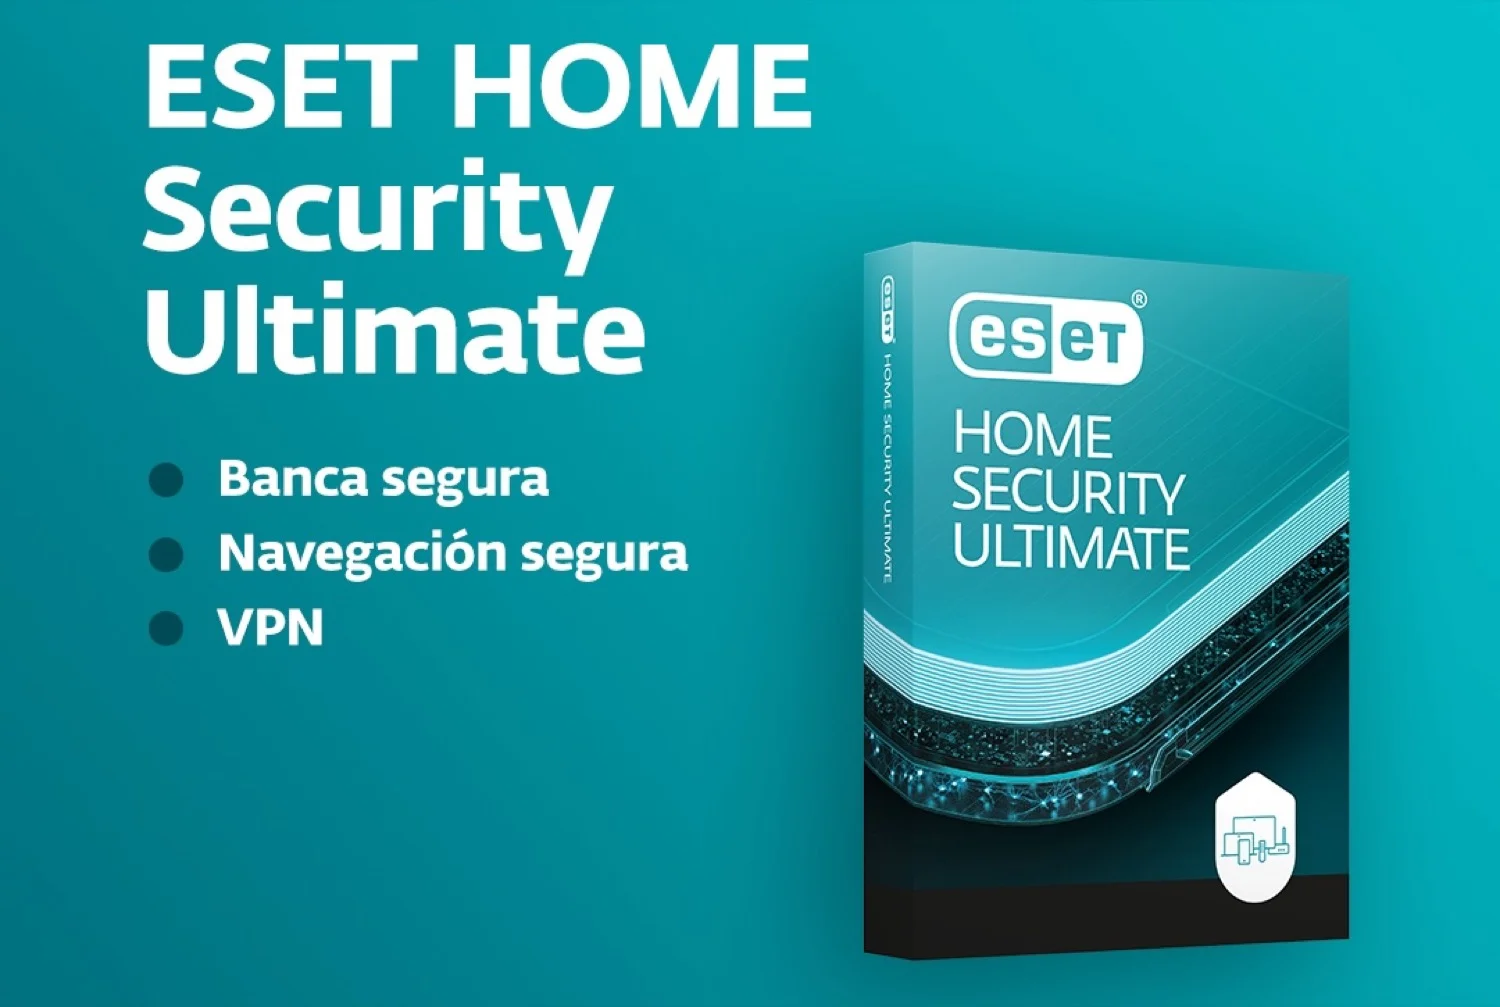 Lanzamiento de ESET HOME Security Ultimate